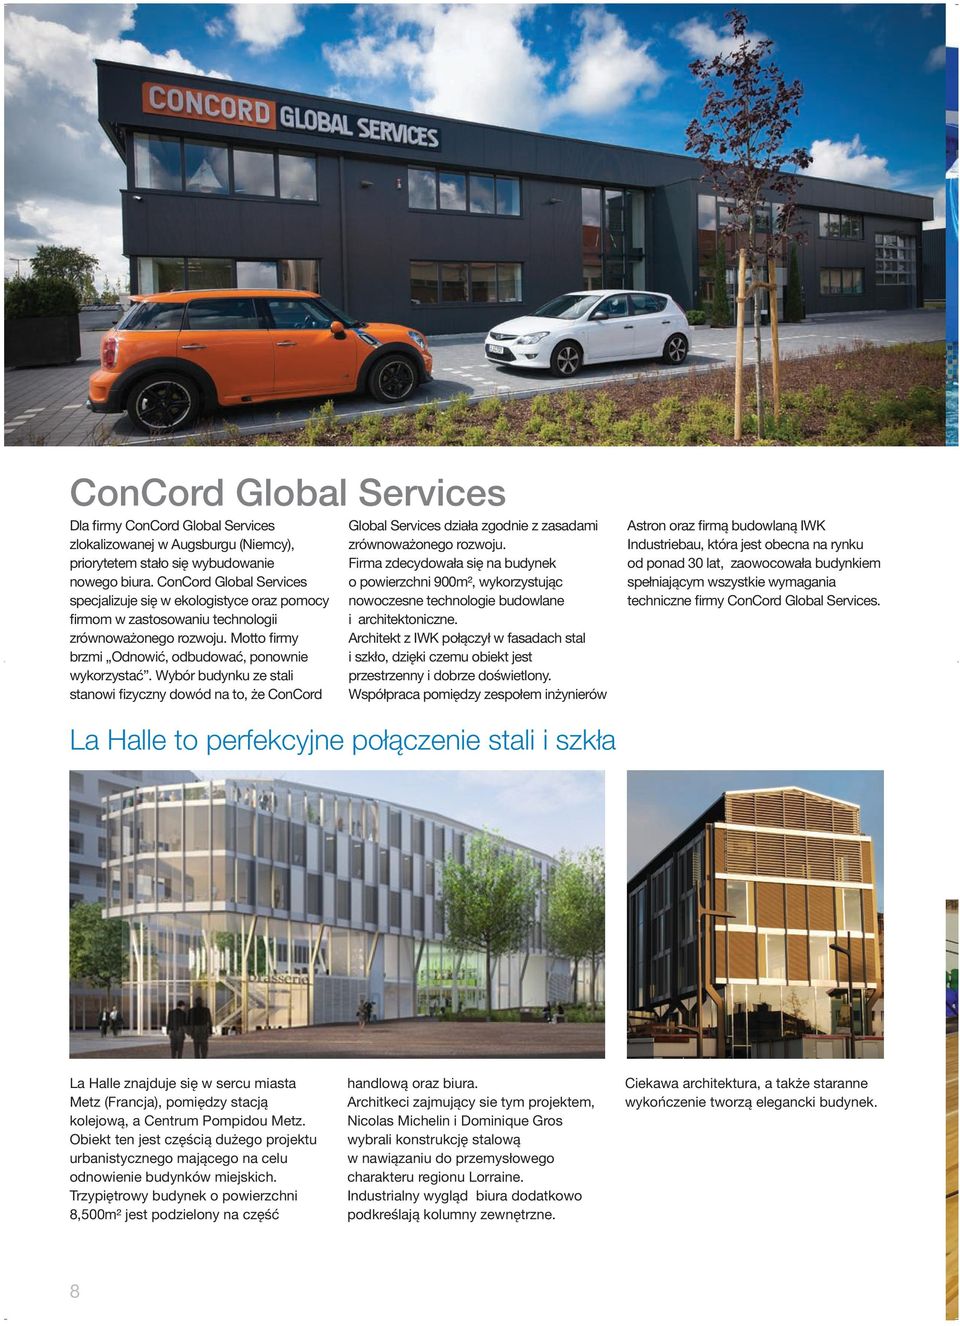 Wybór budynku ze stali stanowi fizyczny dowód na to, że ConCord Global Services działa zgodnie z zasadami zrównoważonego rozwoju.